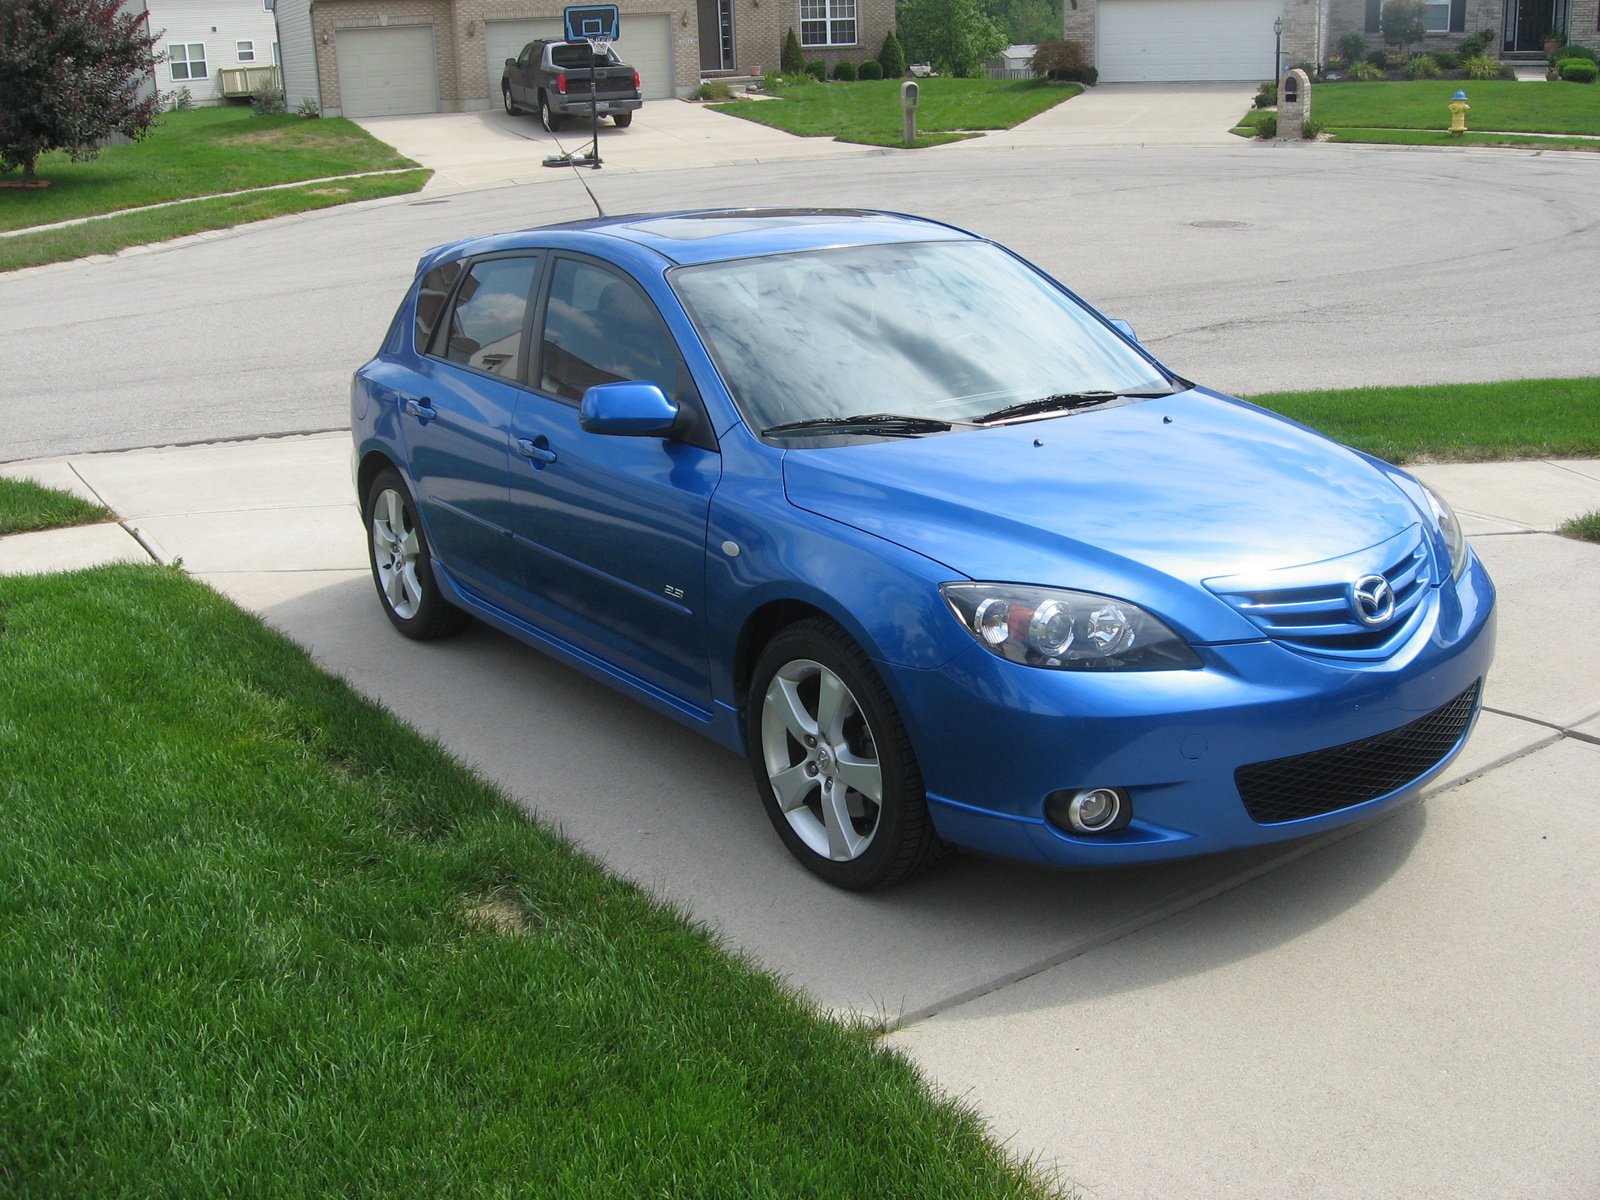 Мазда 3 2006г. Mazda 3 2006. Мазда 3 2006г хэтчбек. Mazda 3 Hatchback 2006. Мазда хэтчбек 2006.